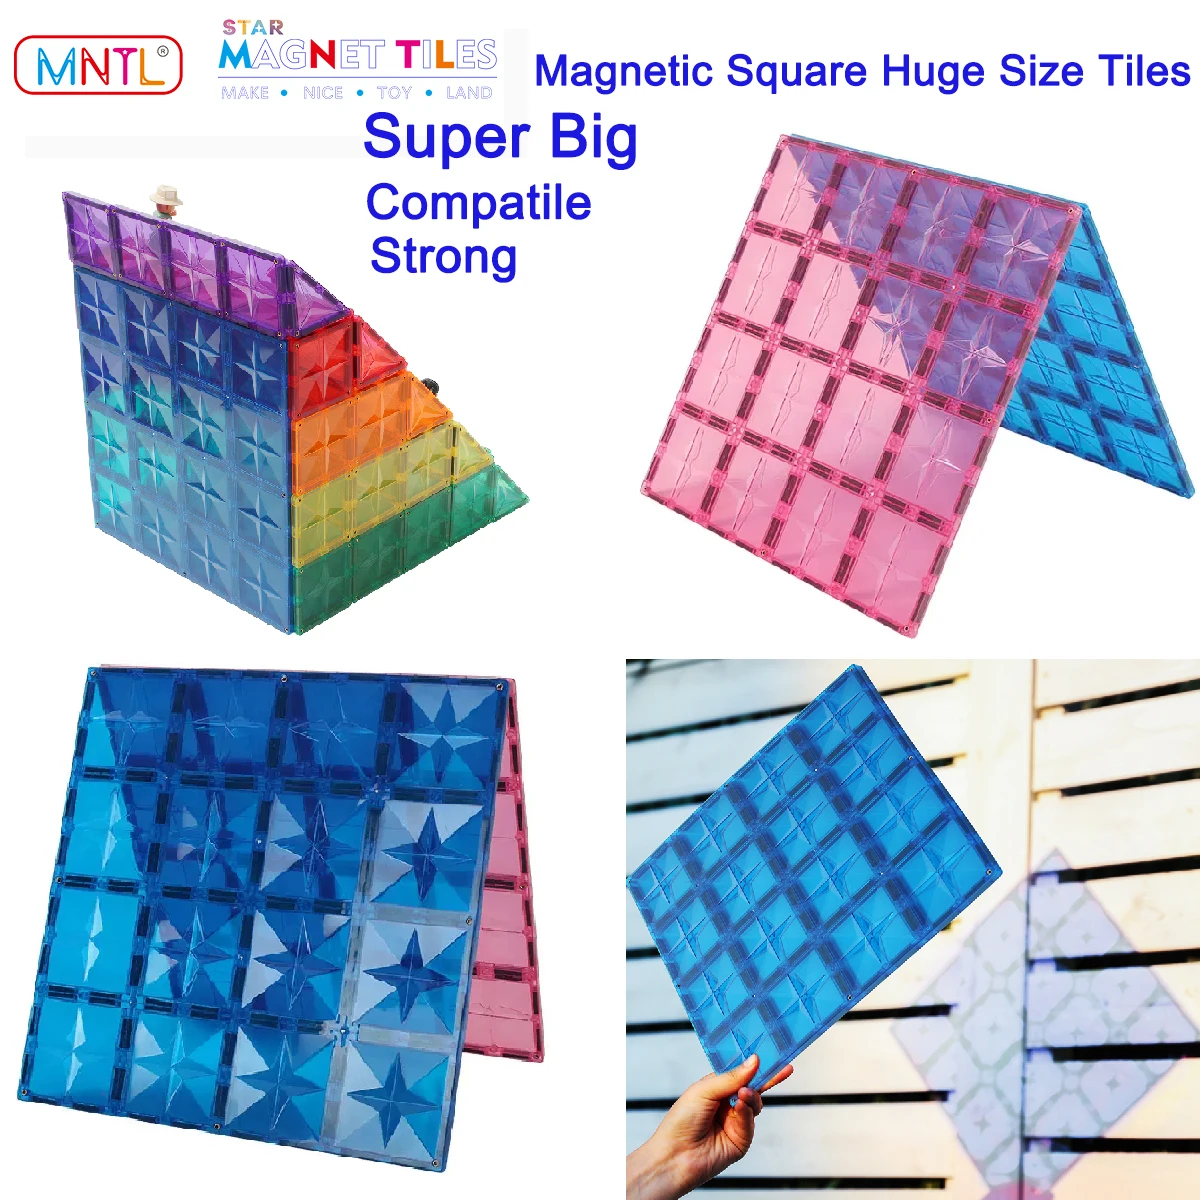 MNTL 2Pcs Magnetic Blocks Big Size Building Toys Construction Compatible  Brand Magnet Tiles Super Large Square Holder Board Kids